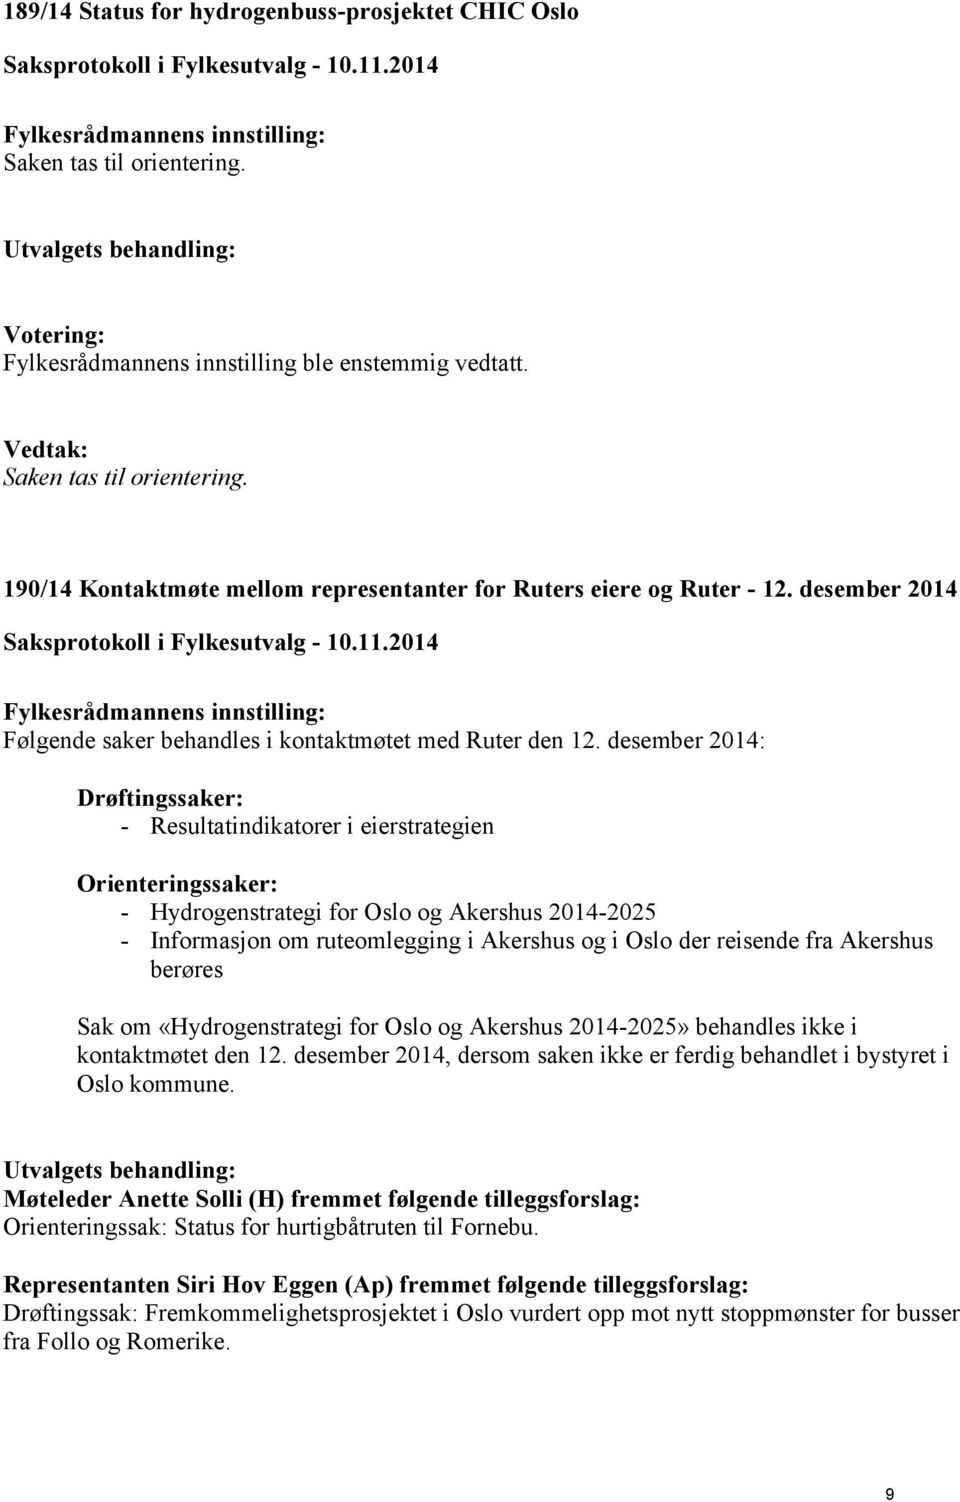 desember 2014: Drøftingssaker: - Resultatindikatorer i eierstrategien Orienteringssaker: - Hydrogenstrategi for Oslo og Akershus 2014-2025 - Informasjon om ruteomlegging i Akershus og i Oslo der